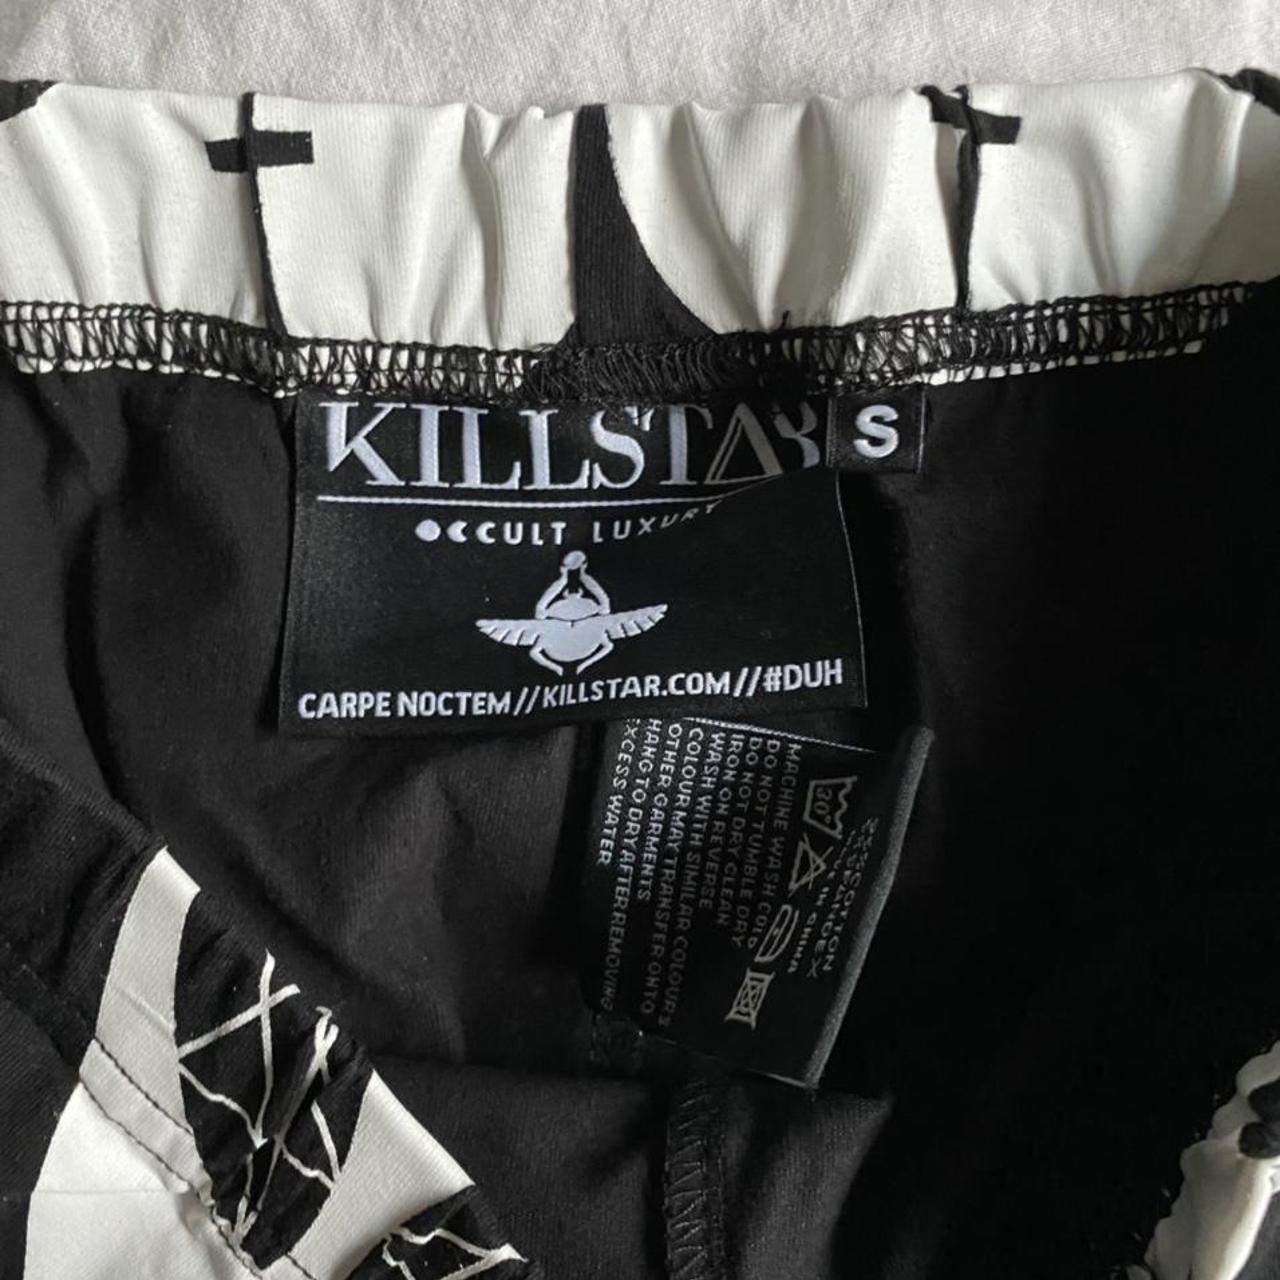 Product Image 2 - KillStar alien leggings. Size S.